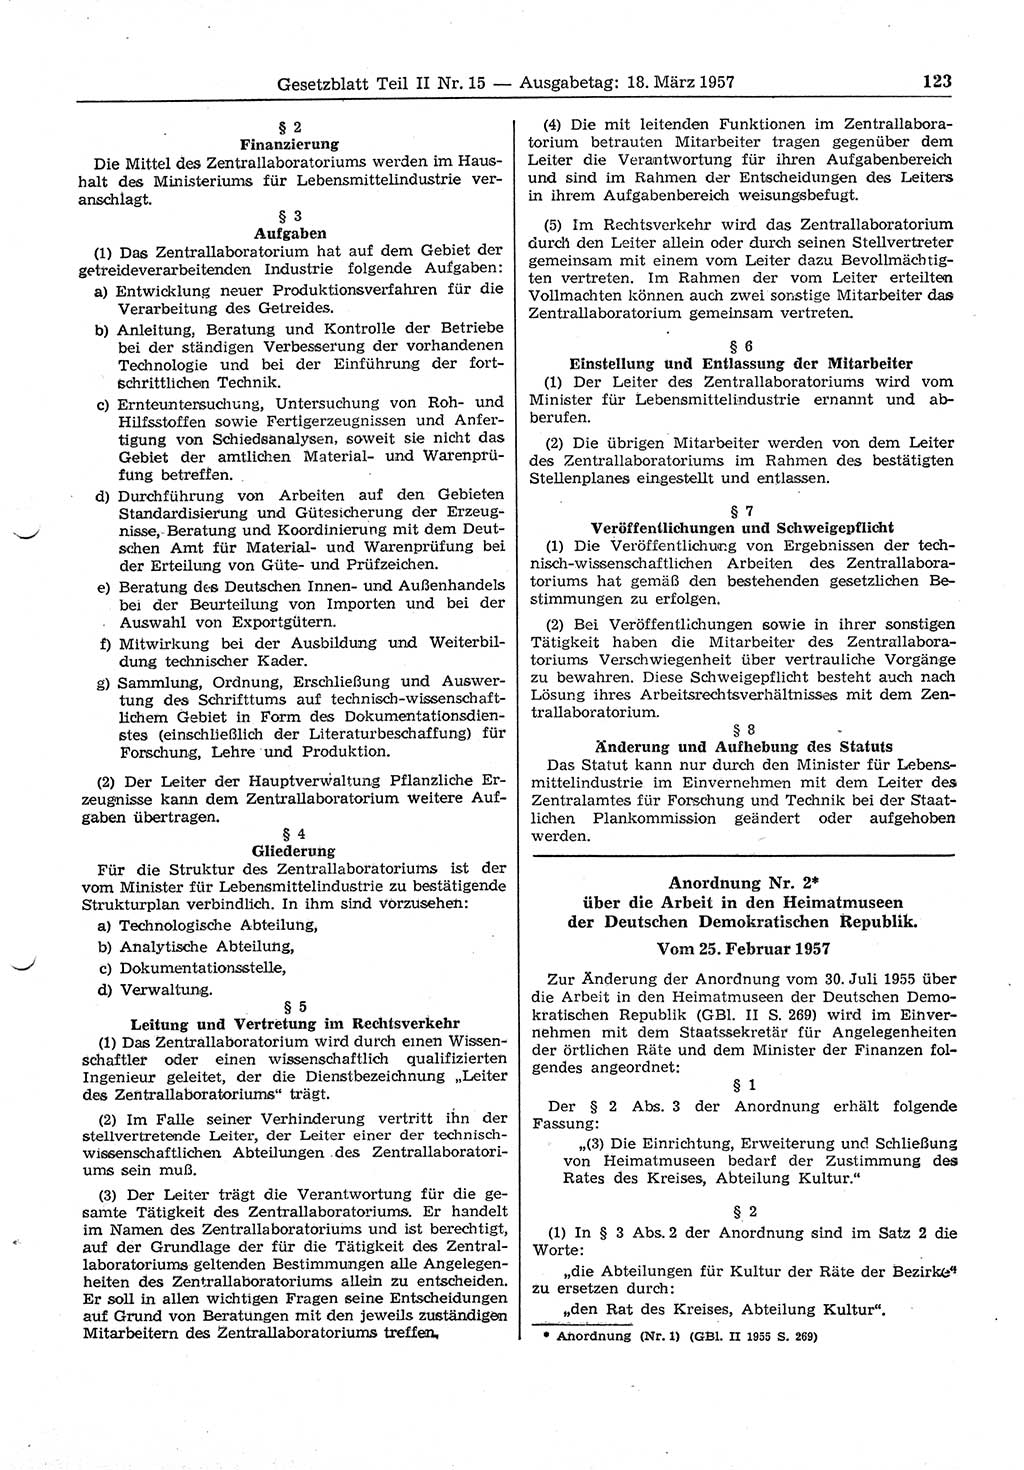 Gesetzblatt (GBl.) der Deutschen Demokratischen Republik (DDR) Teil ⅠⅠ 1957, Seite 123 (GBl. DDR ⅠⅠ 1957, S. 123)